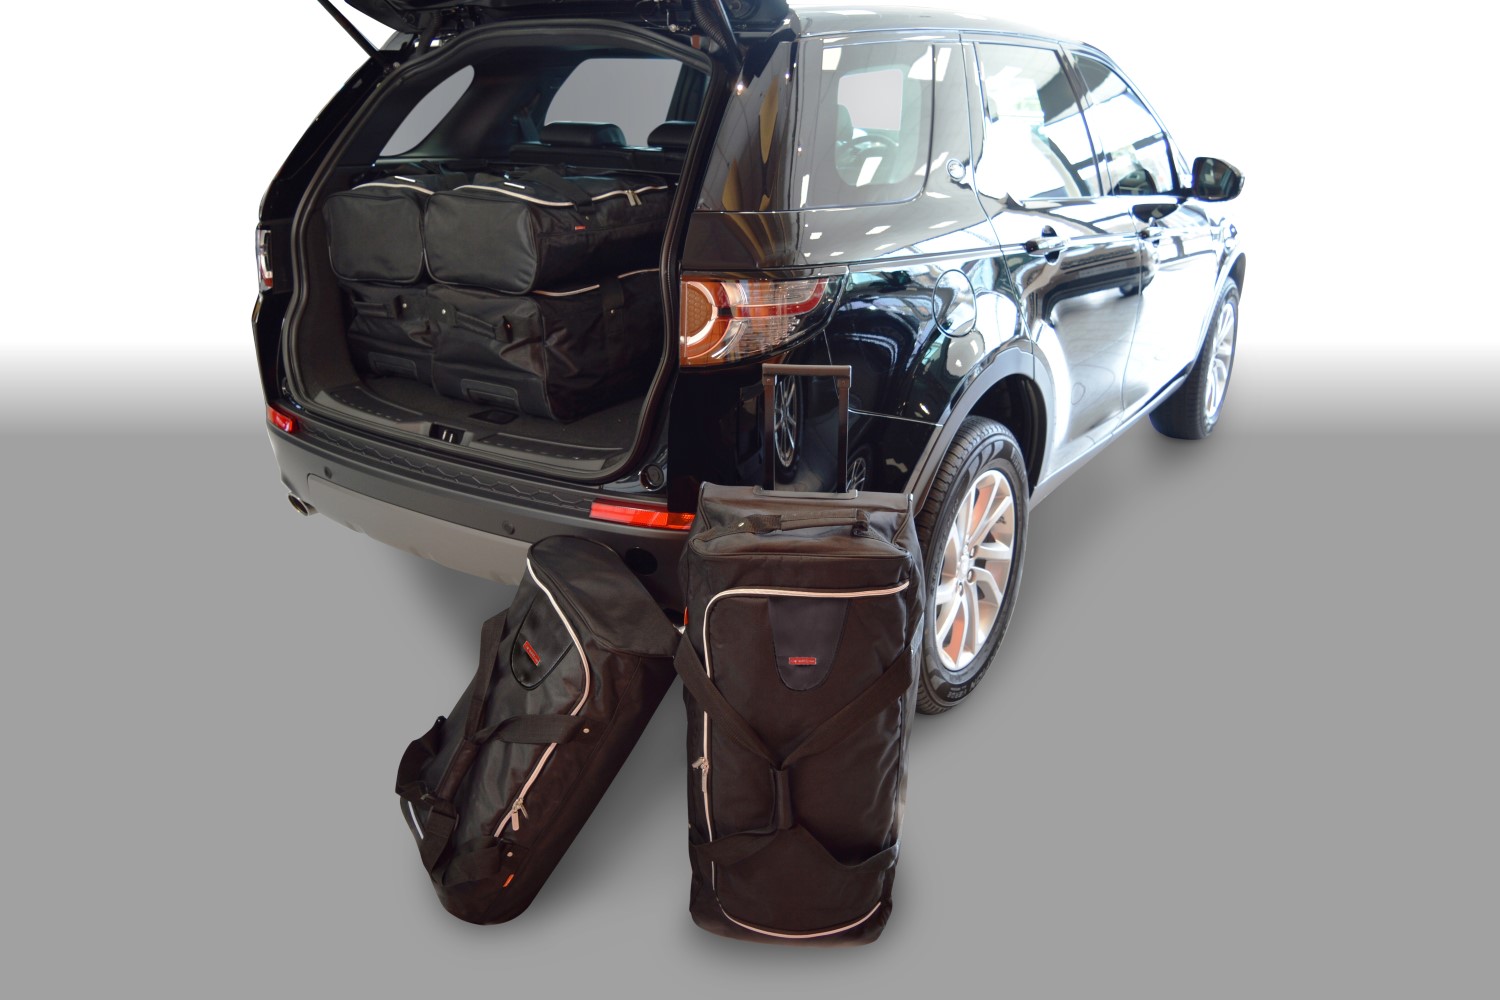  Cuir Tapis Coffre Voiture pour Land Rover Discovery (5seats)  2004-2023,sur Mesure PU Cuir Bac de Coffre ImerméAbles Cargaison Tapis  AntidéRapant Housse Protection Intérieur Accessories